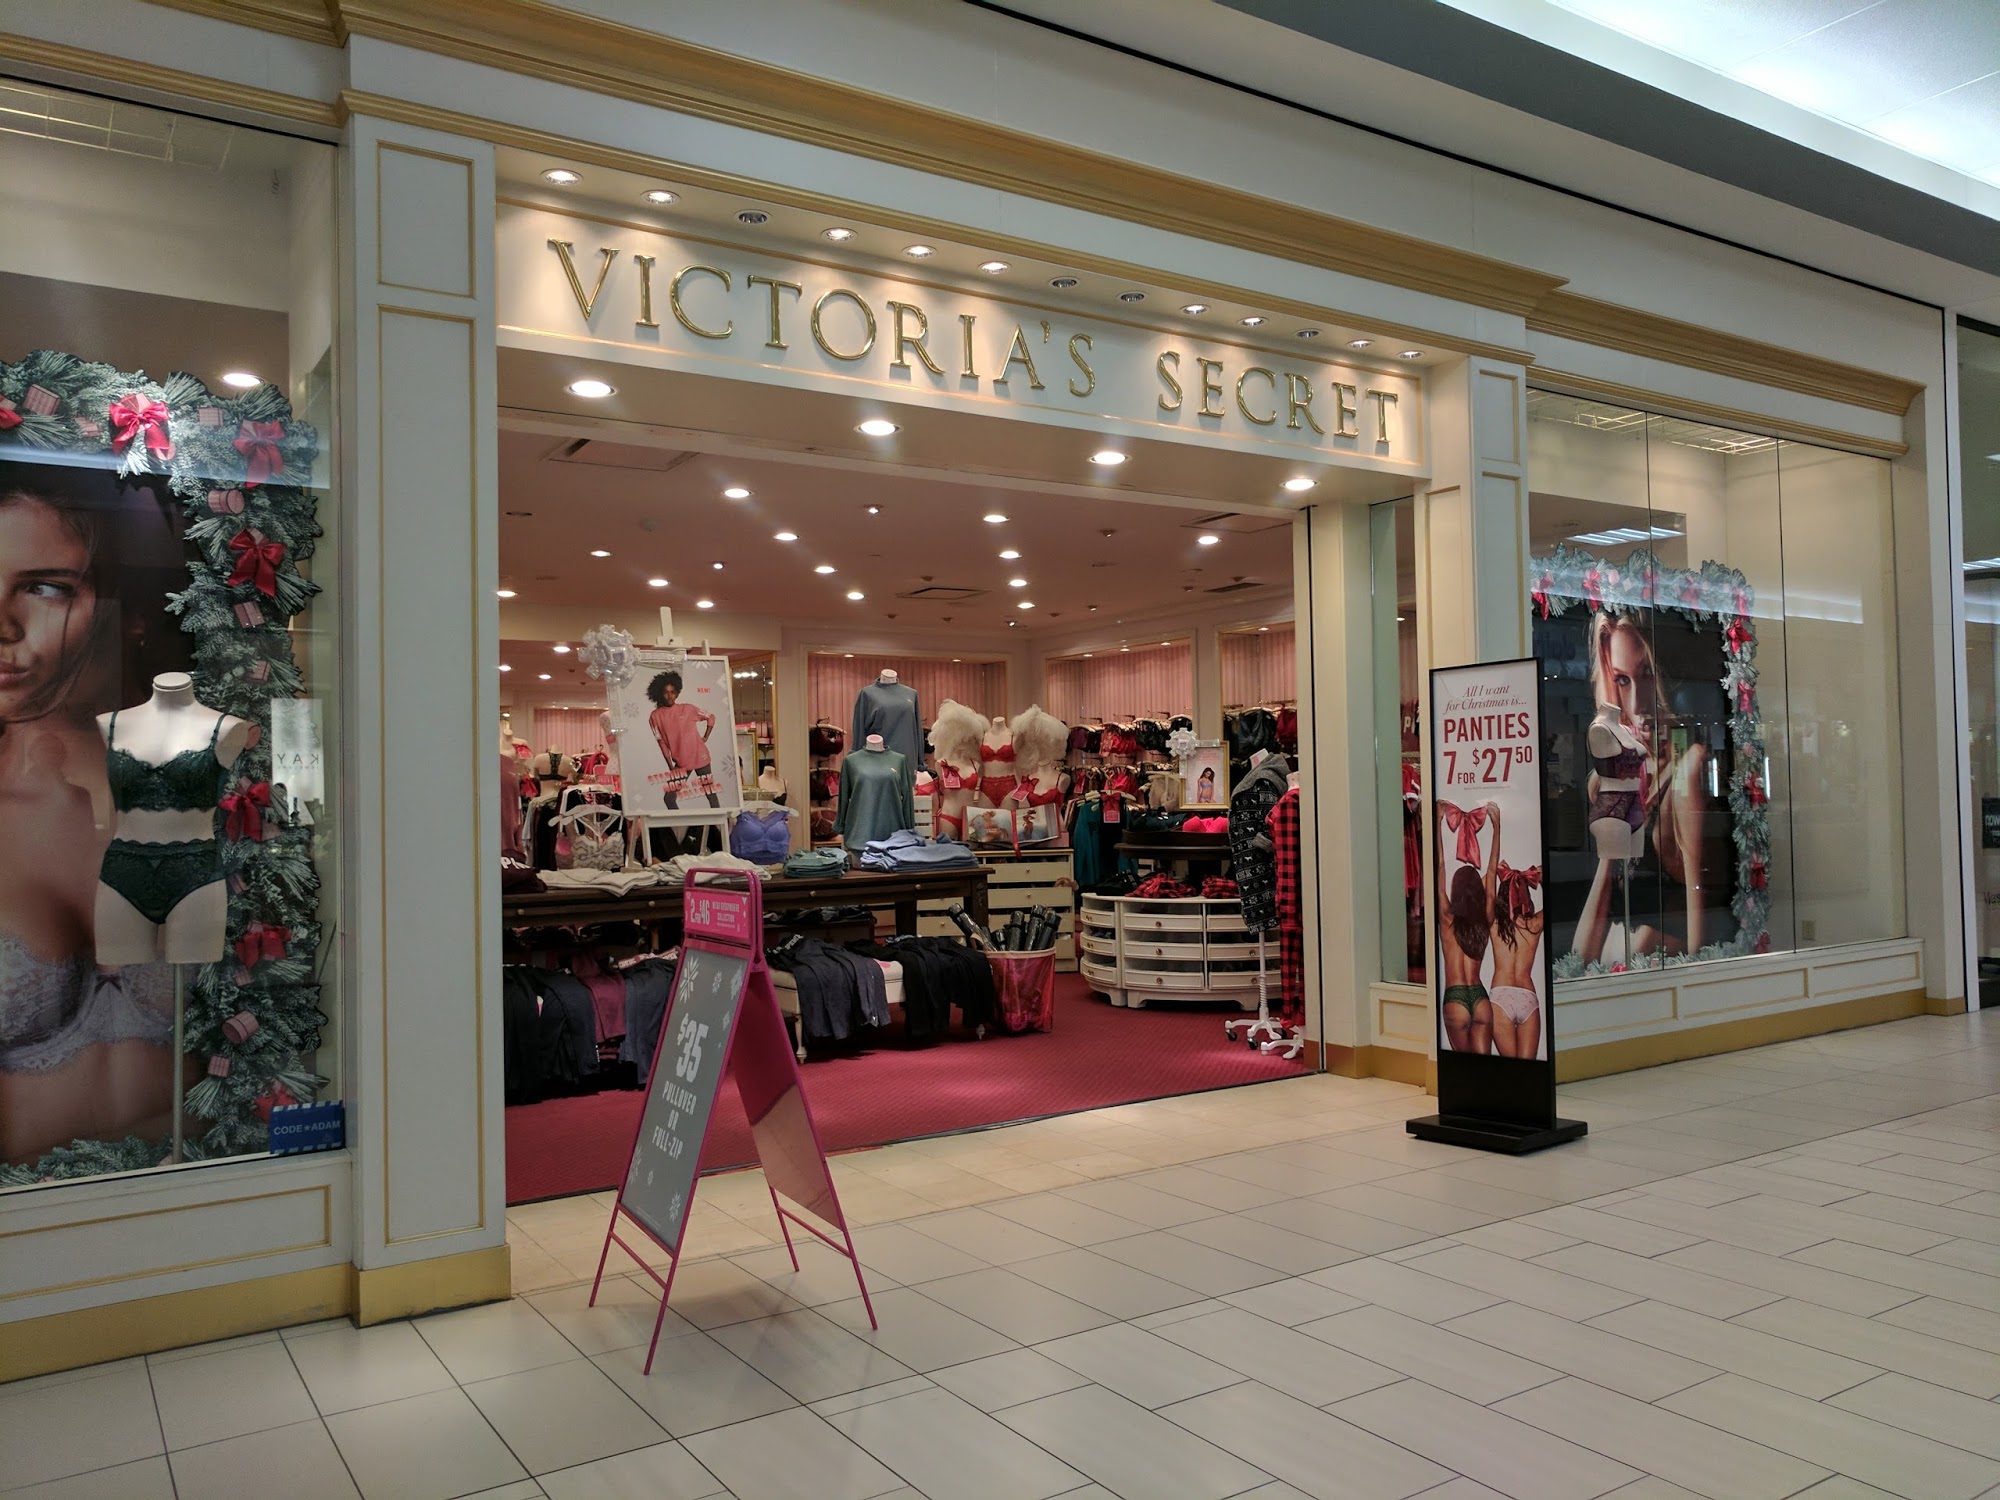 Victoria's Secret & PINK by Victoria's Secret